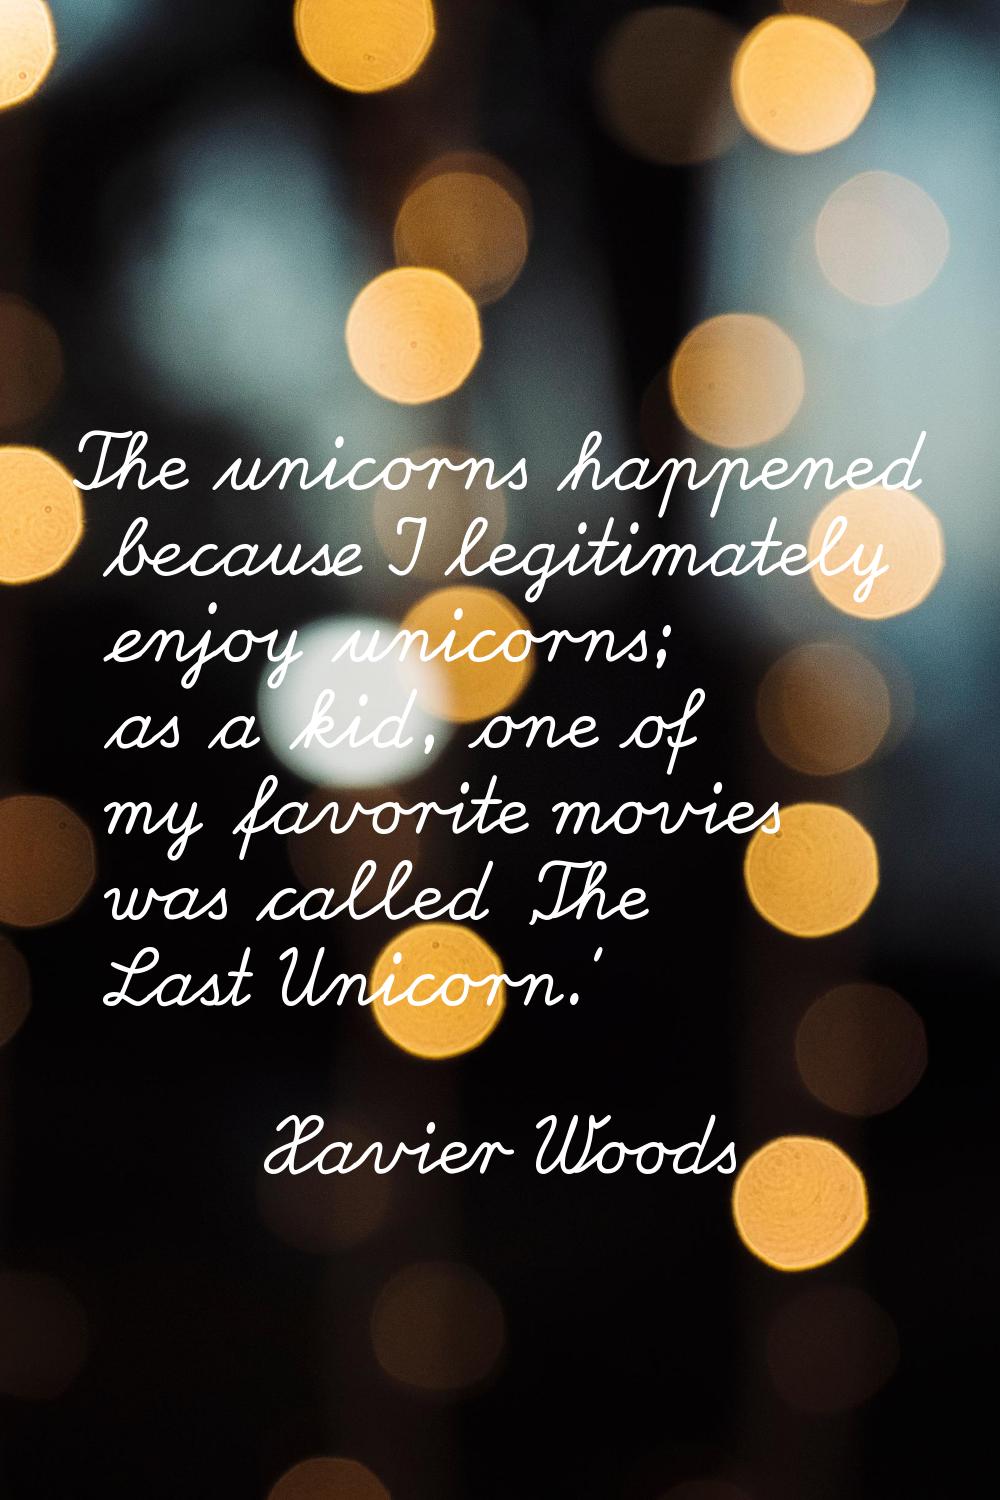 The unicorns happened because I legitimately enjoy unicorns; as a kid, one of my favorite movies wa